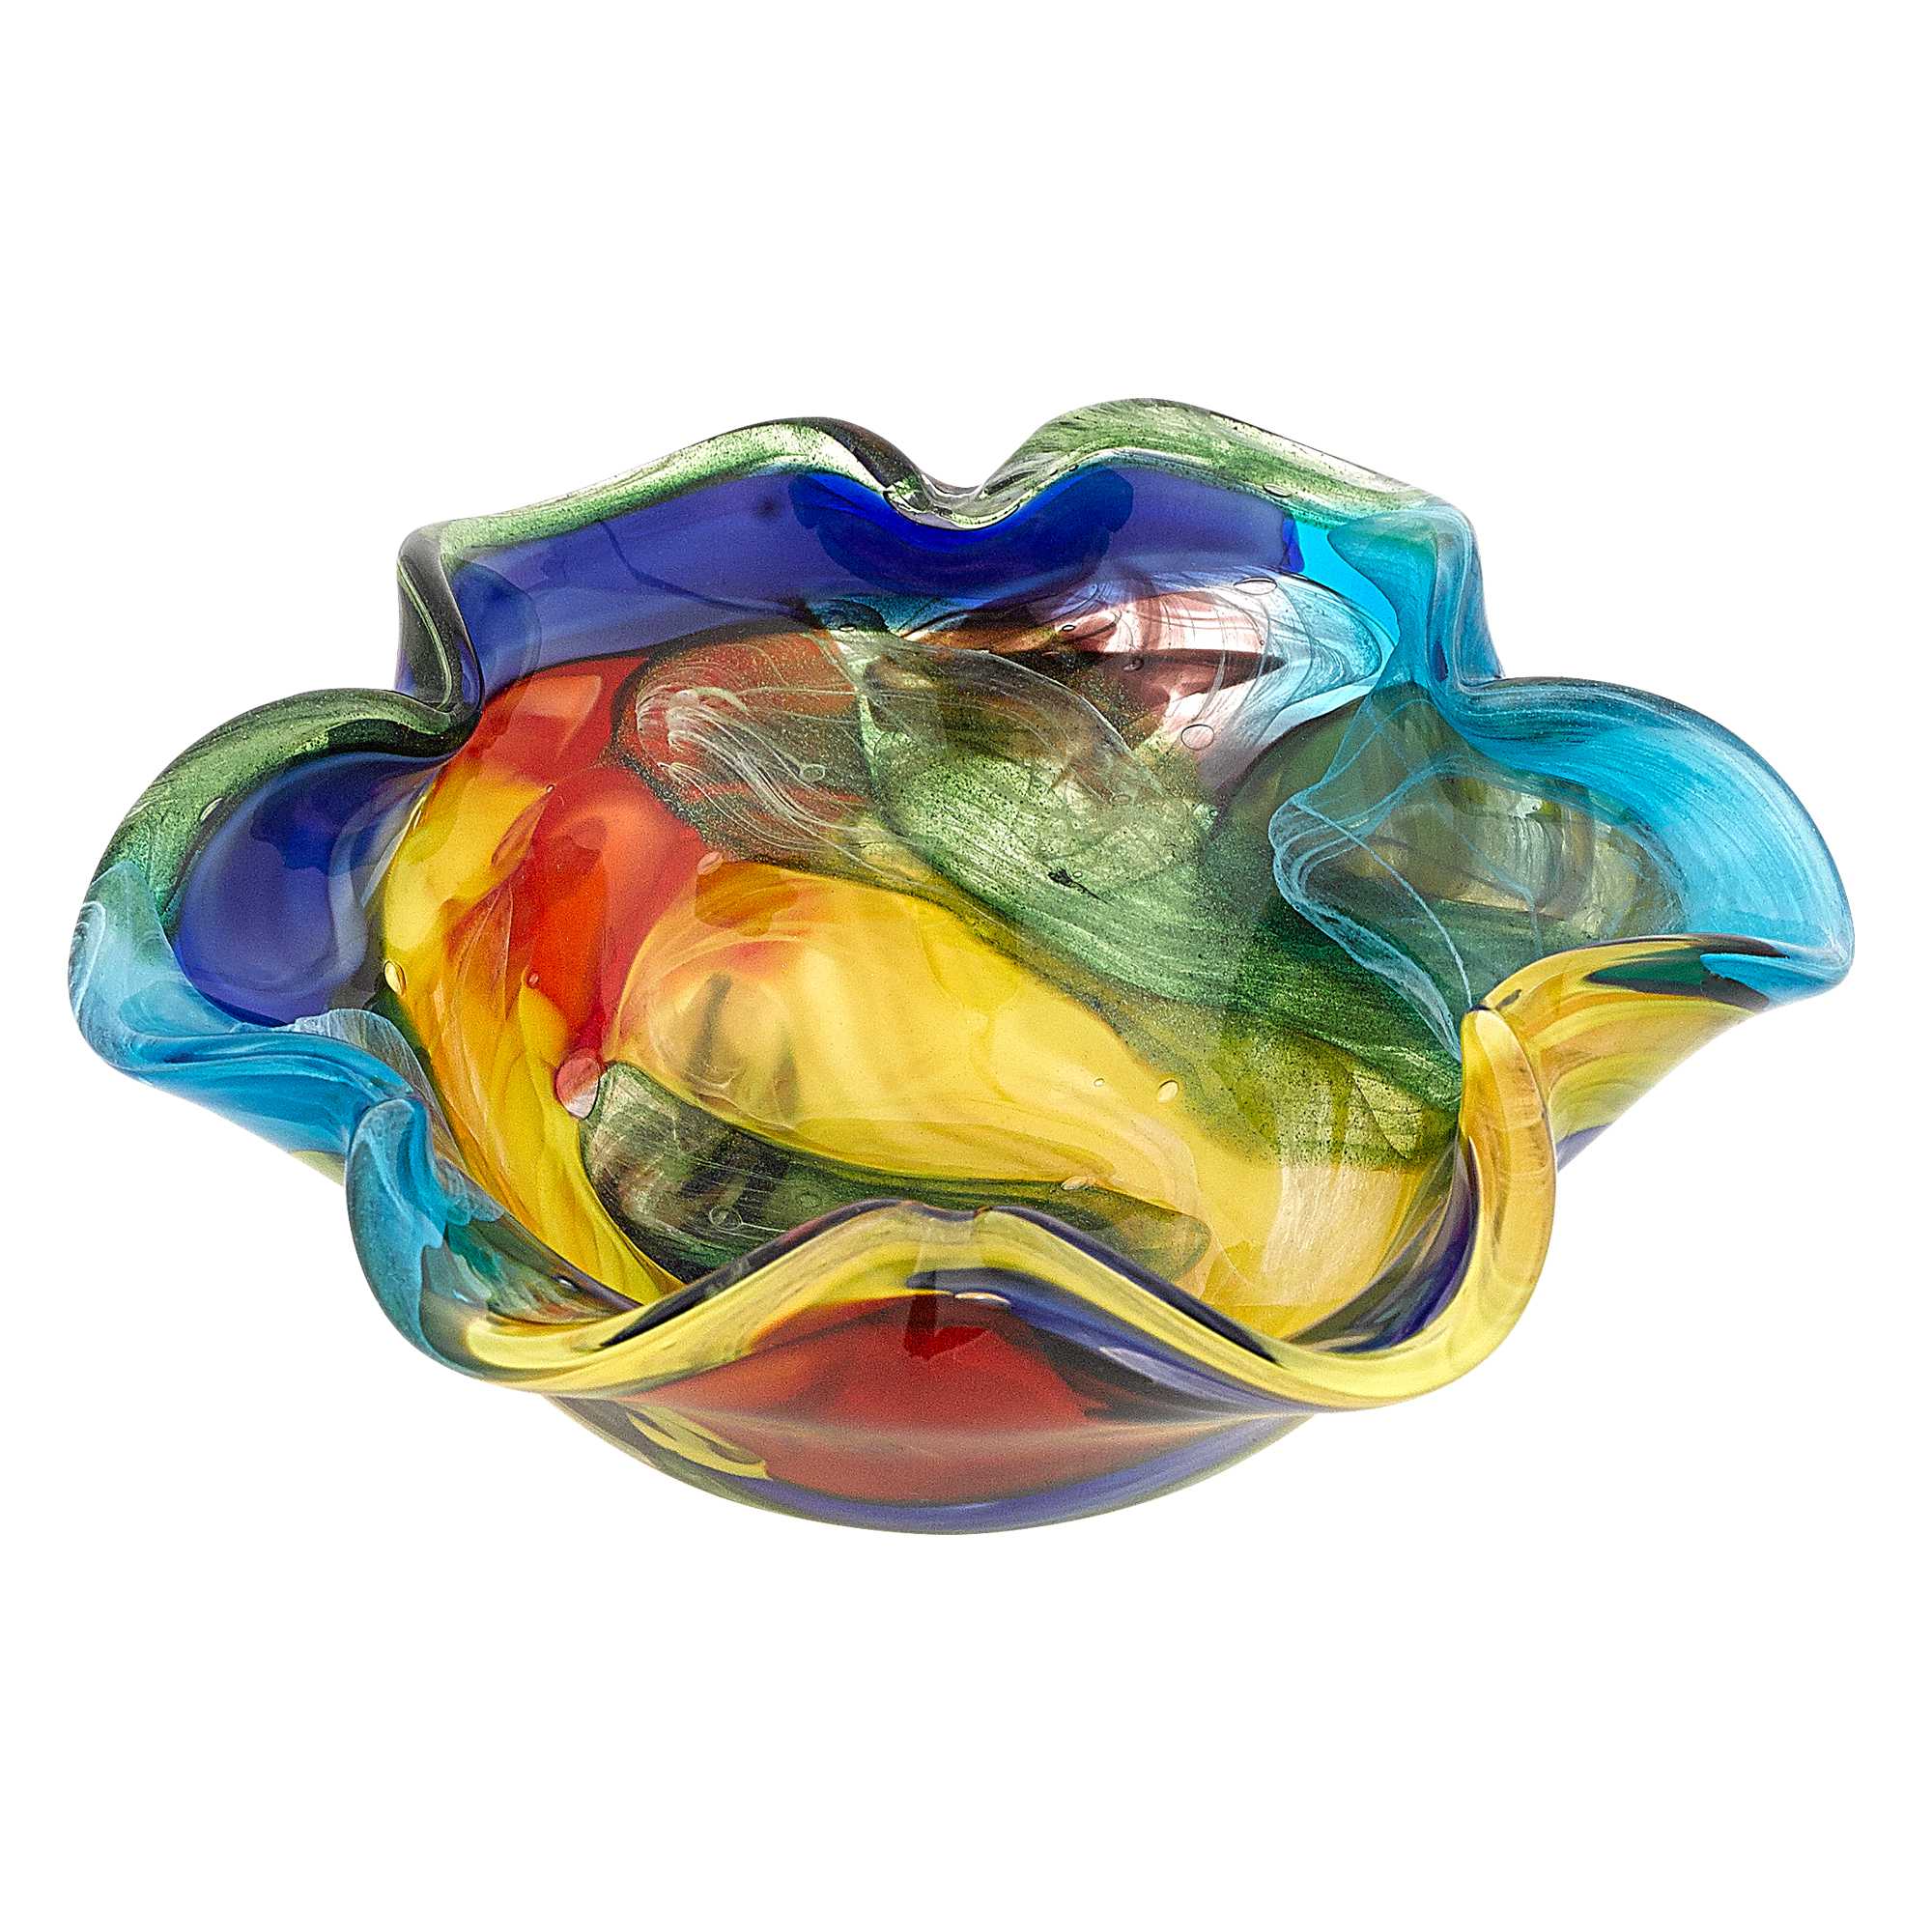 8.5" Multi-Color Art Glass Floppy Centerpiece Bowl